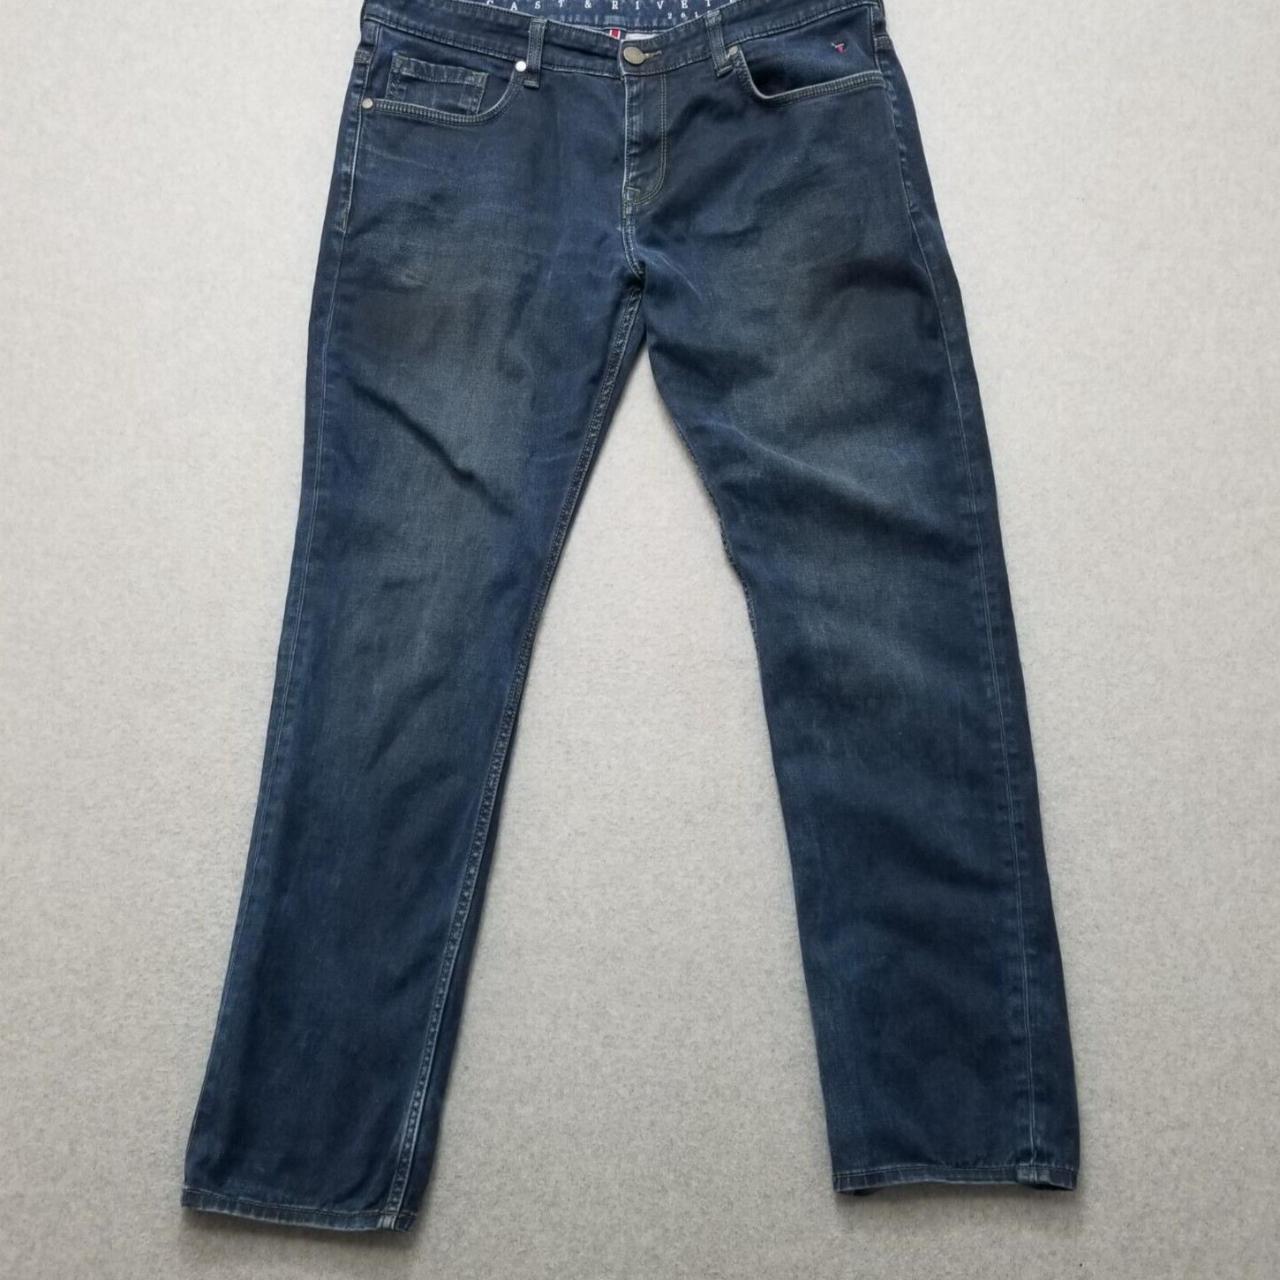 #LP #Jeans #Cast & #Riveted Mens Jeans 38 Blue Low... - Depop